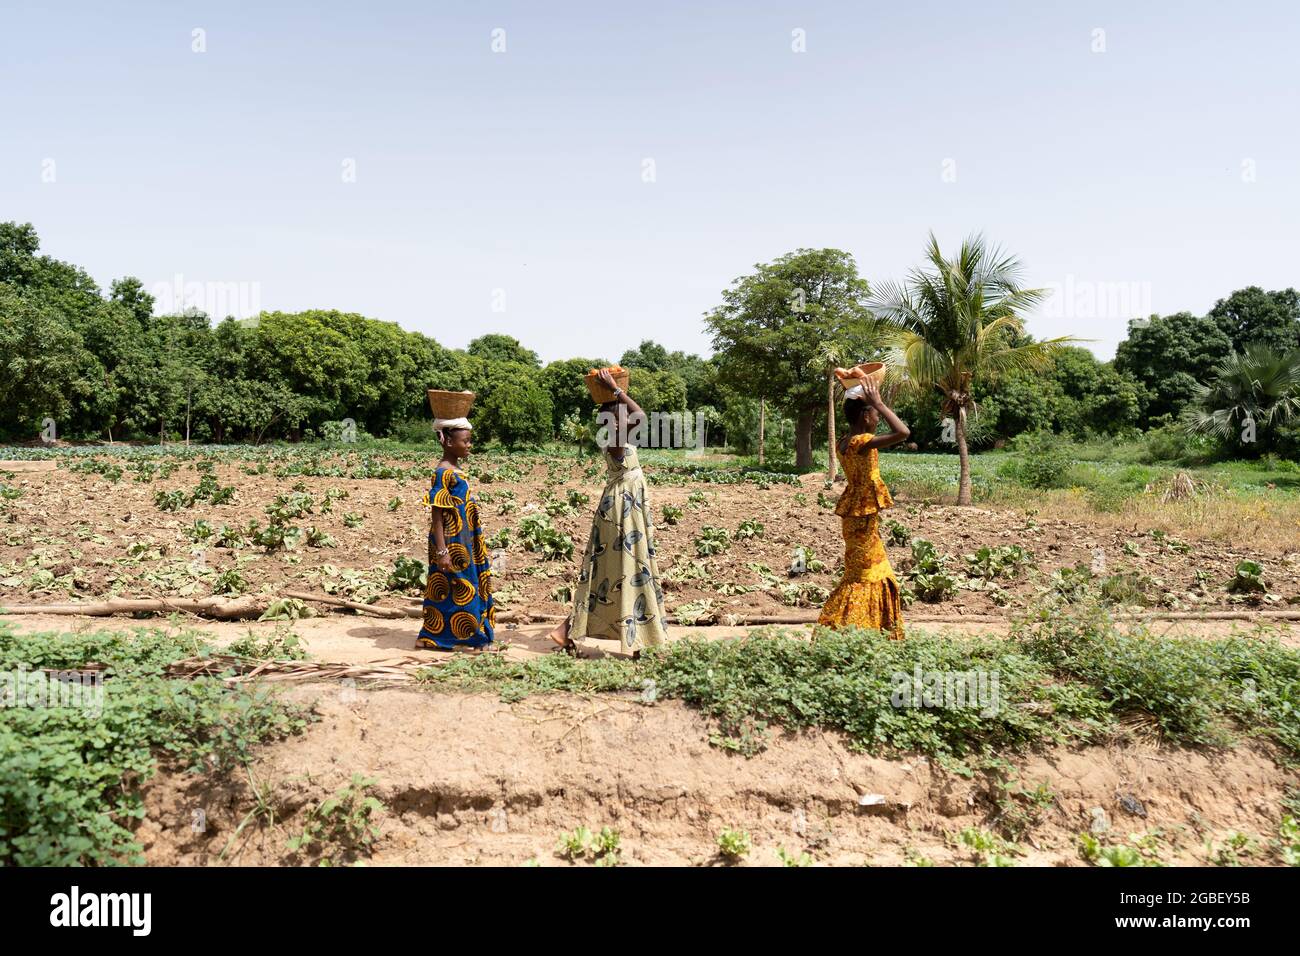 Dans cette image, trois belles petites filles africaines avec des robes longues traditionnelles coulorantes marchent dans une rangée admid un champ de légumes, avec bas Banque D'Images